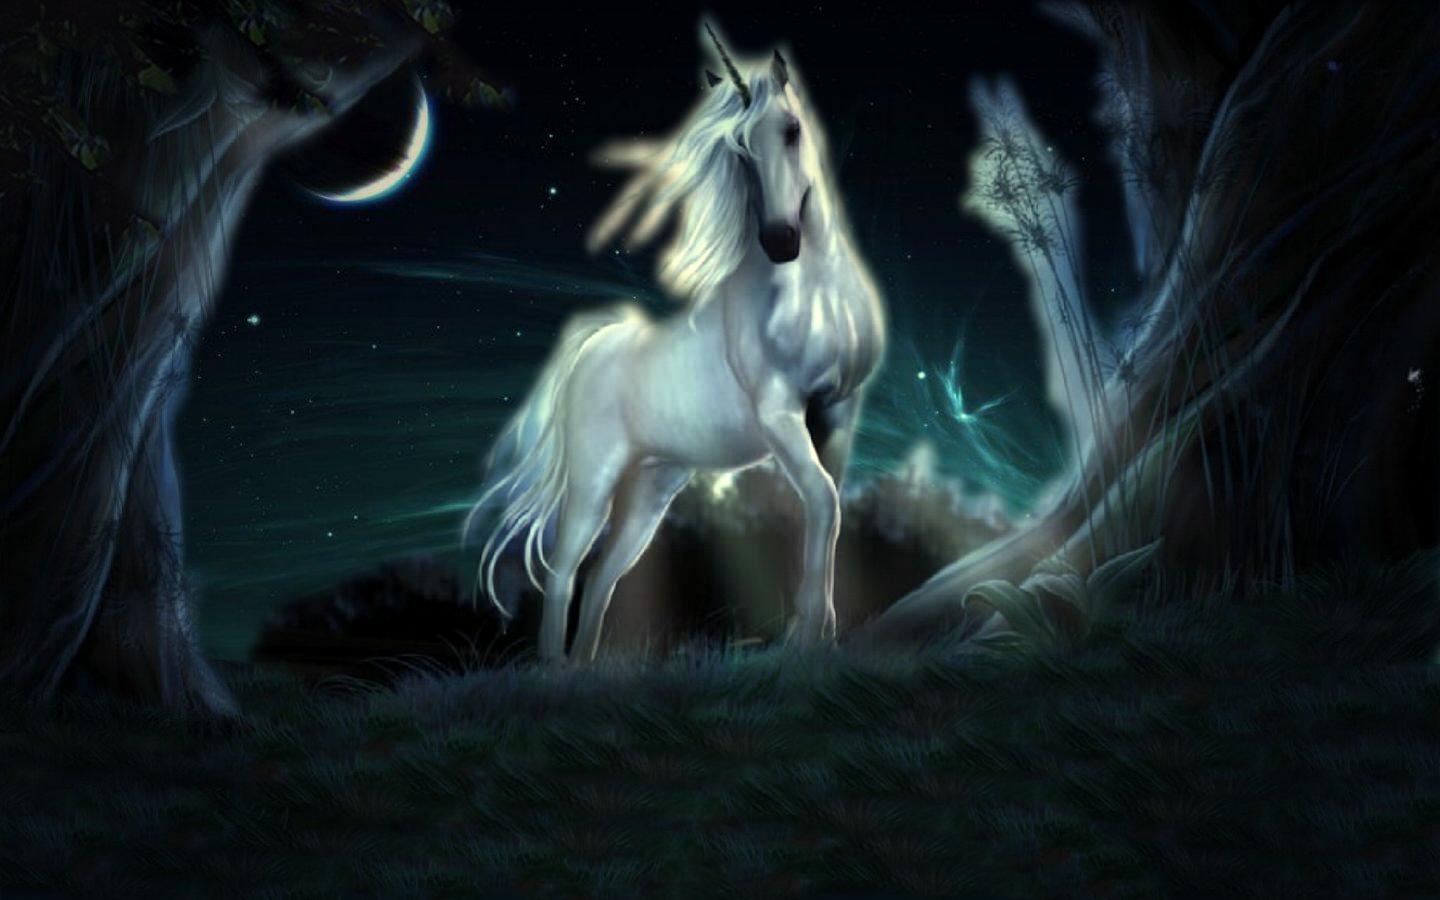 fond d'écran licorne,cheval,ténèbres,personnage fictif,créature mythique,ciel